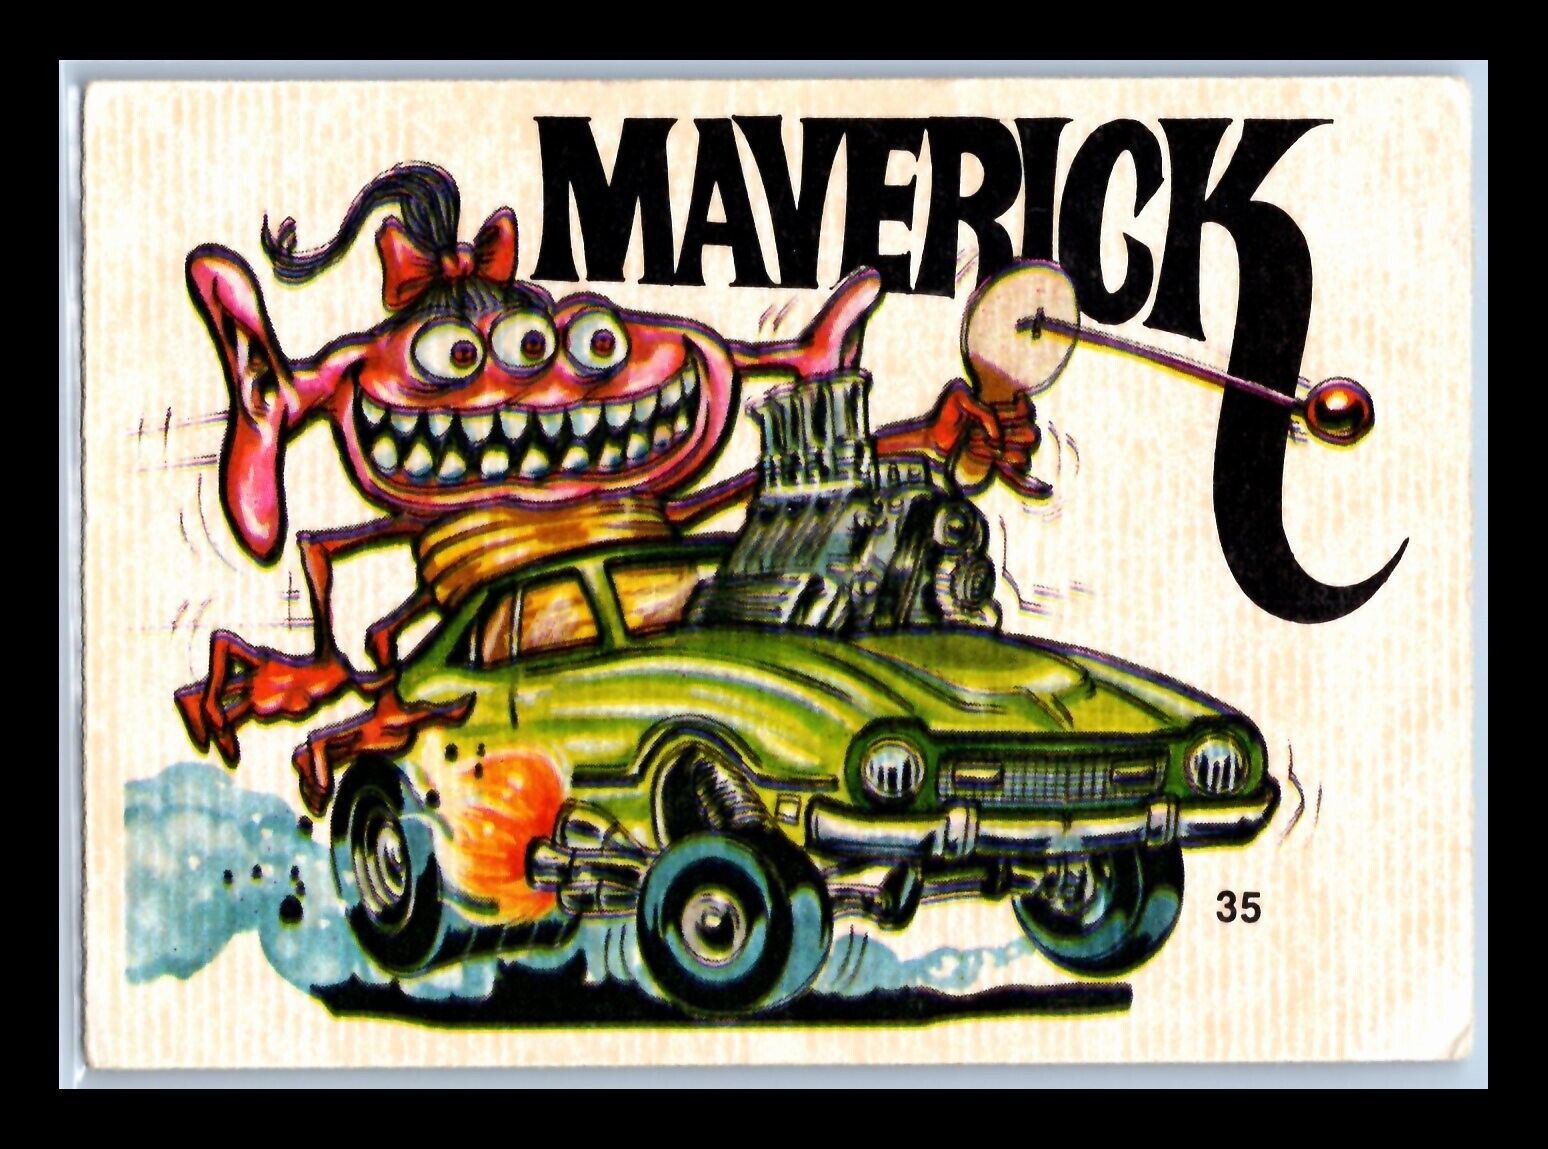 1973 Donruss Series 2 MAVERICK Fantastic Odd Rods sticker/card #35 poor